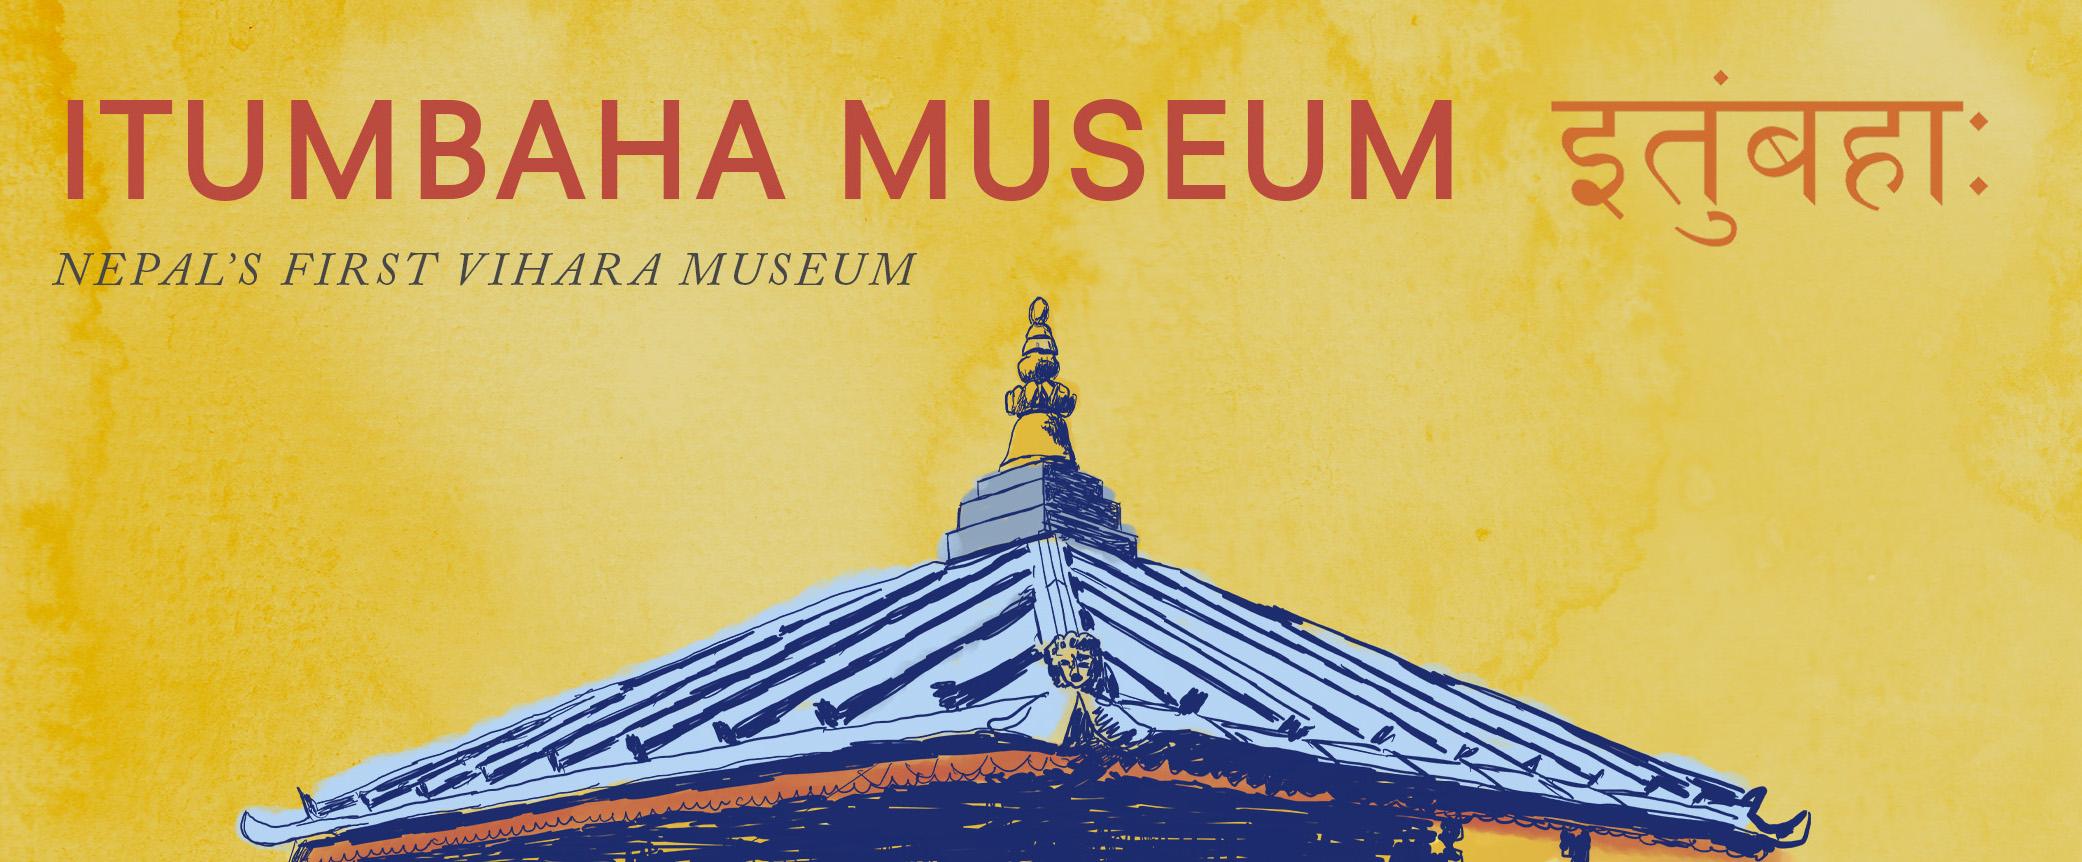 Itumbaha Museum